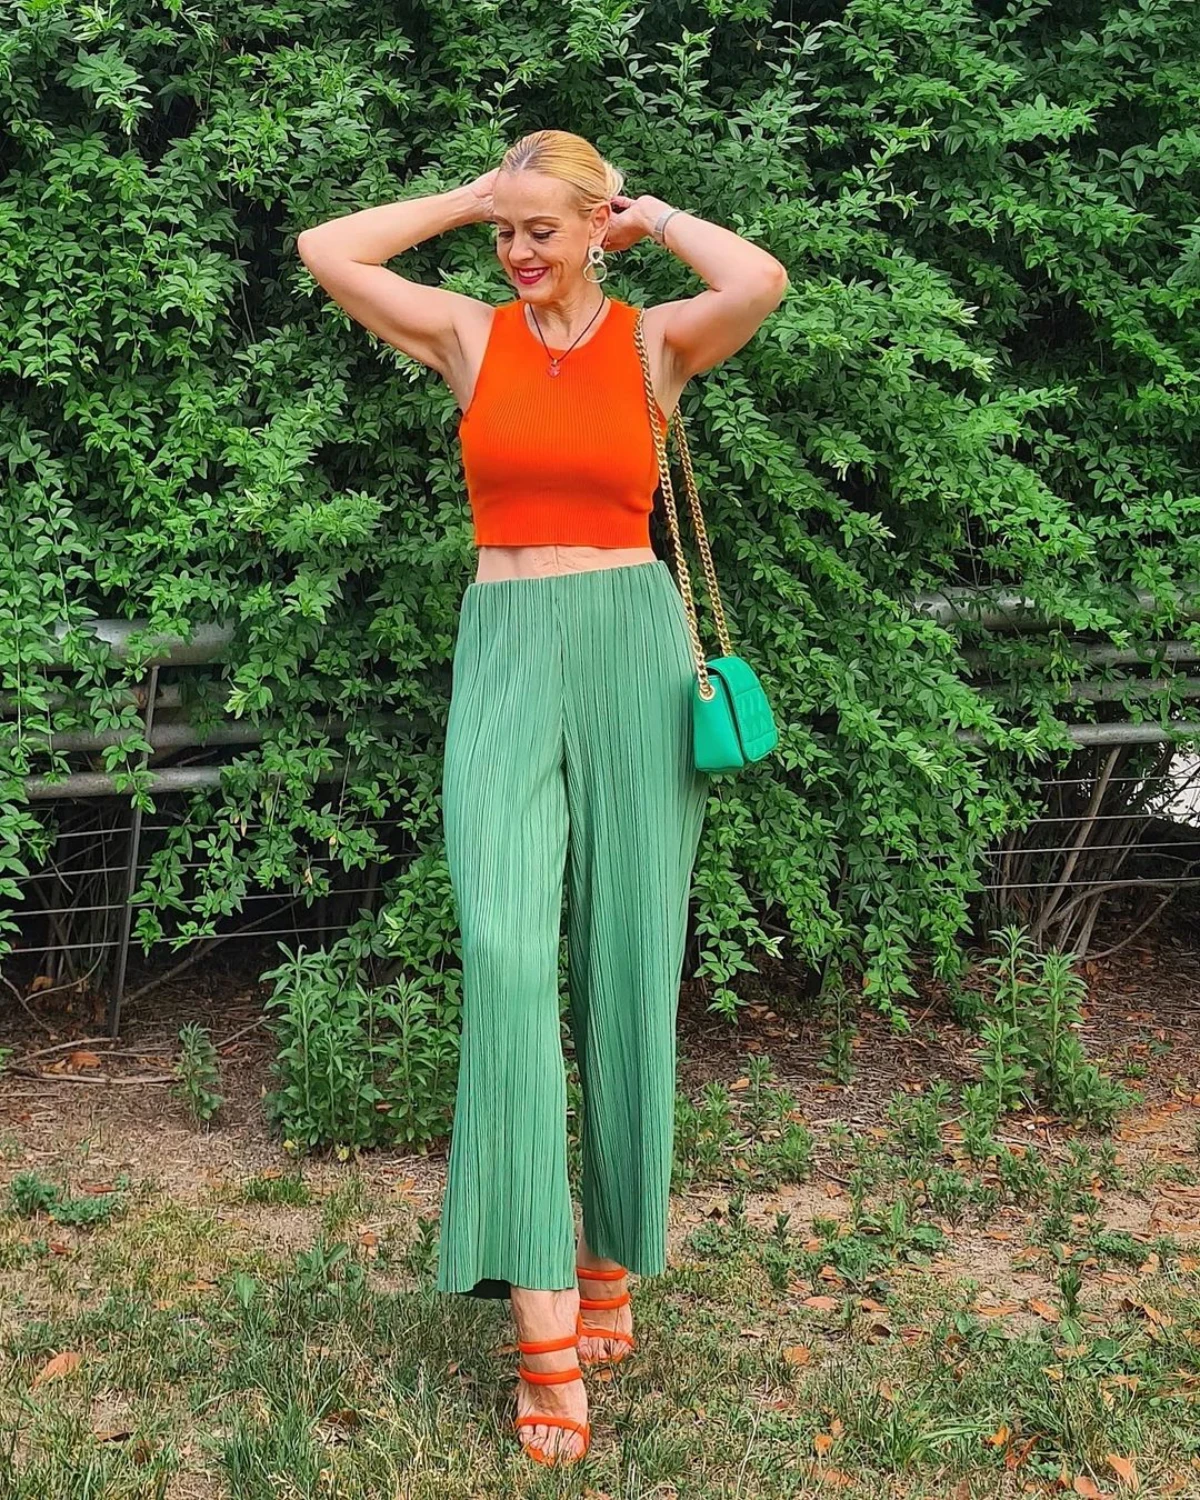 femme 60 ans pantalon vert large haut et chaussure orange jardin